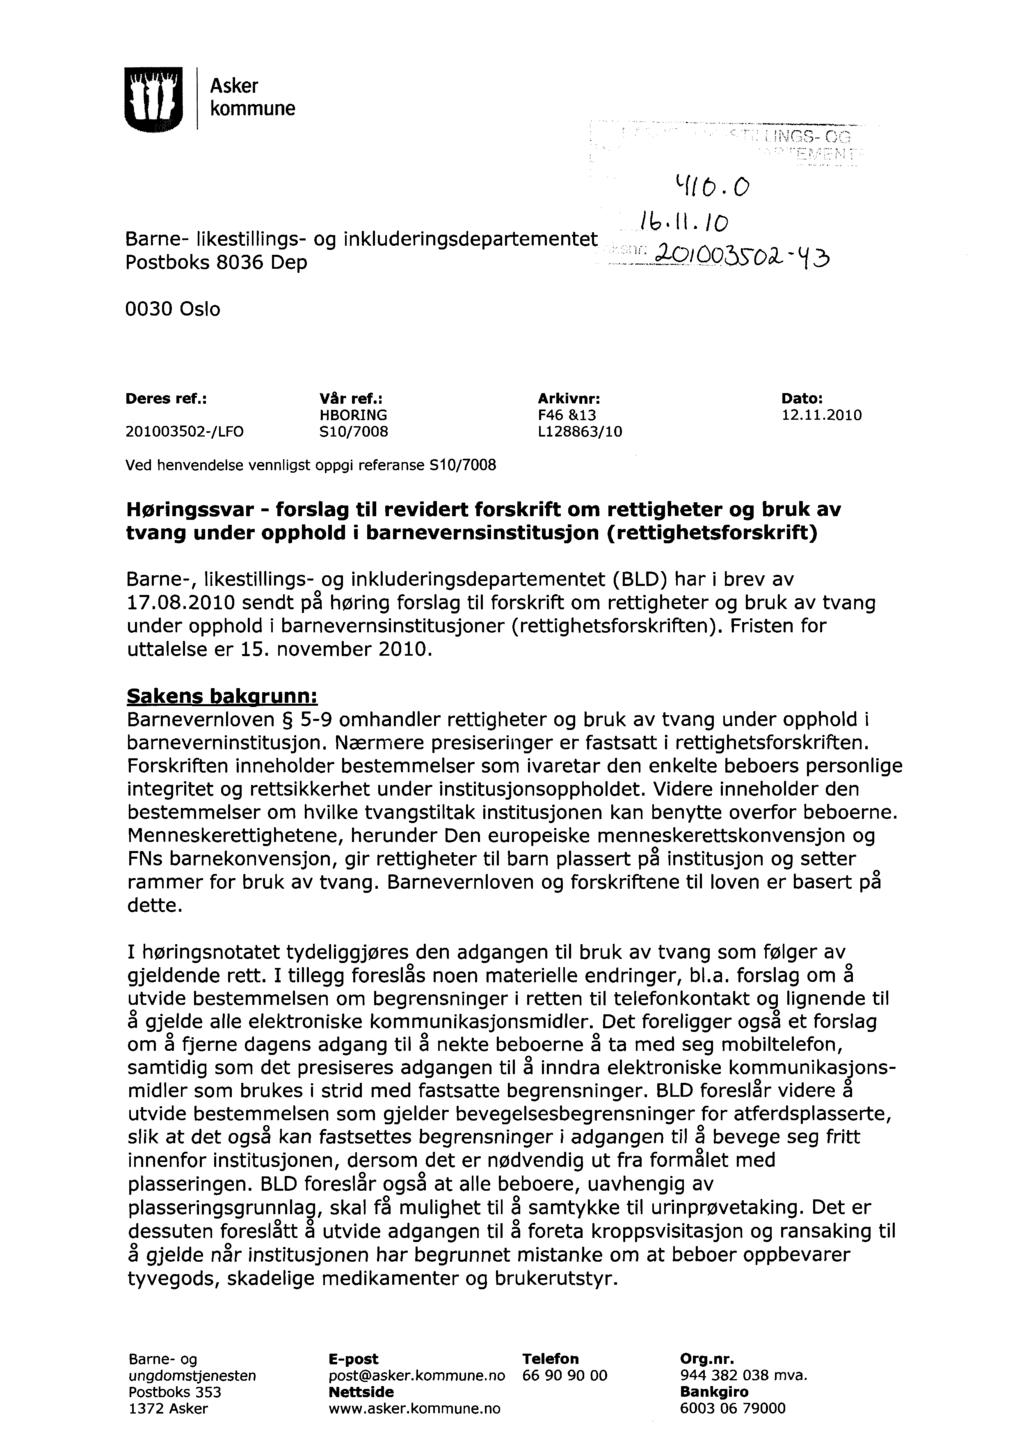 [1] Asker kommune Barne- likestillings- og inkluderingsdepartementet Postboks 8036 Dep /6.11.